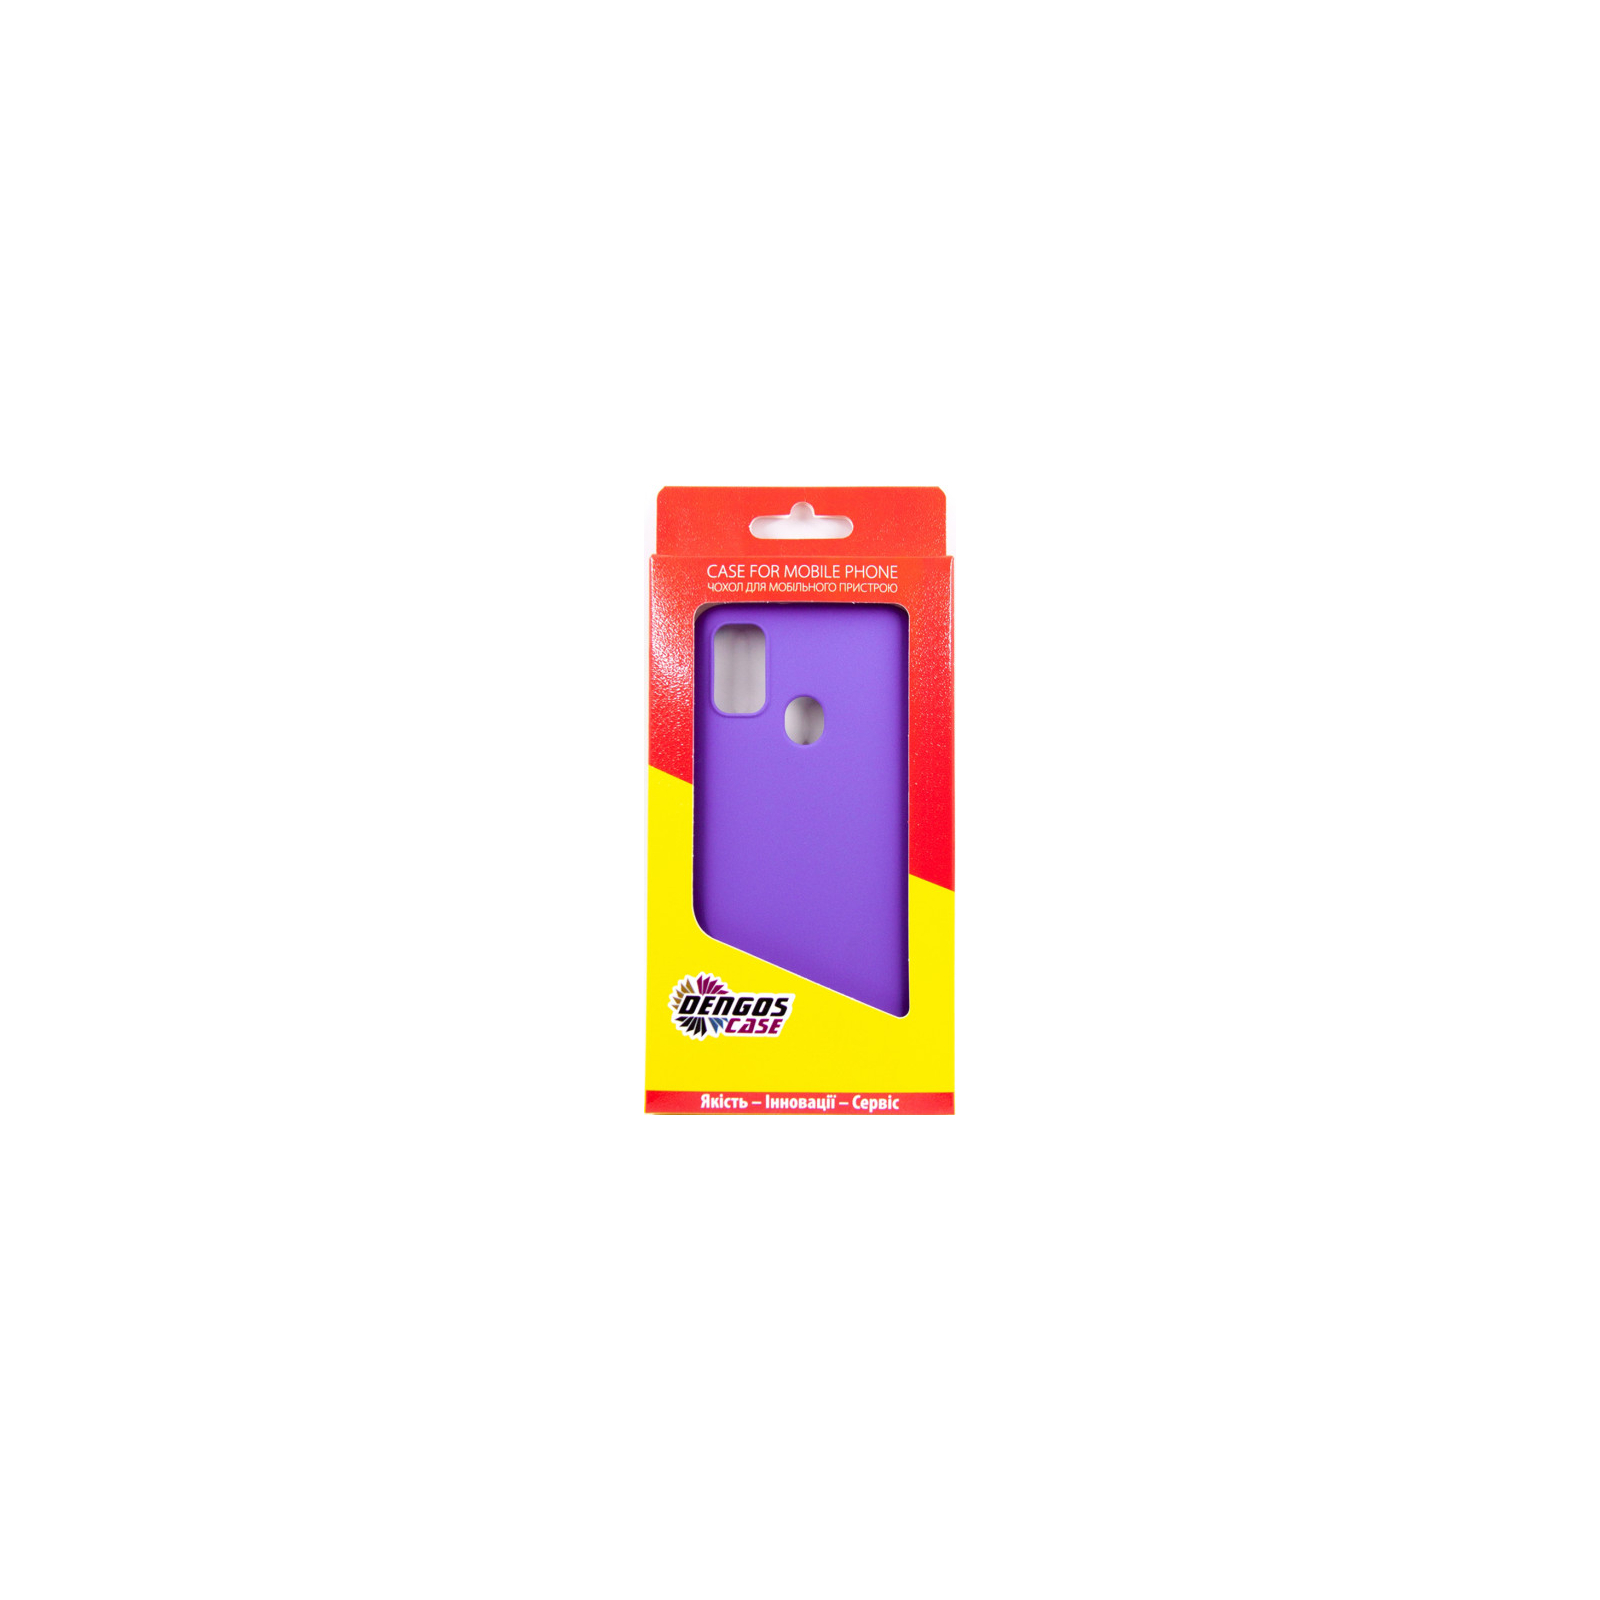 Чехол для мобильного телефона Dengos Carbon Samsung Galaxy M30s, grey (DG-TPU-CRBN-10) (DG-TPU-CRBN-10) изображение 3